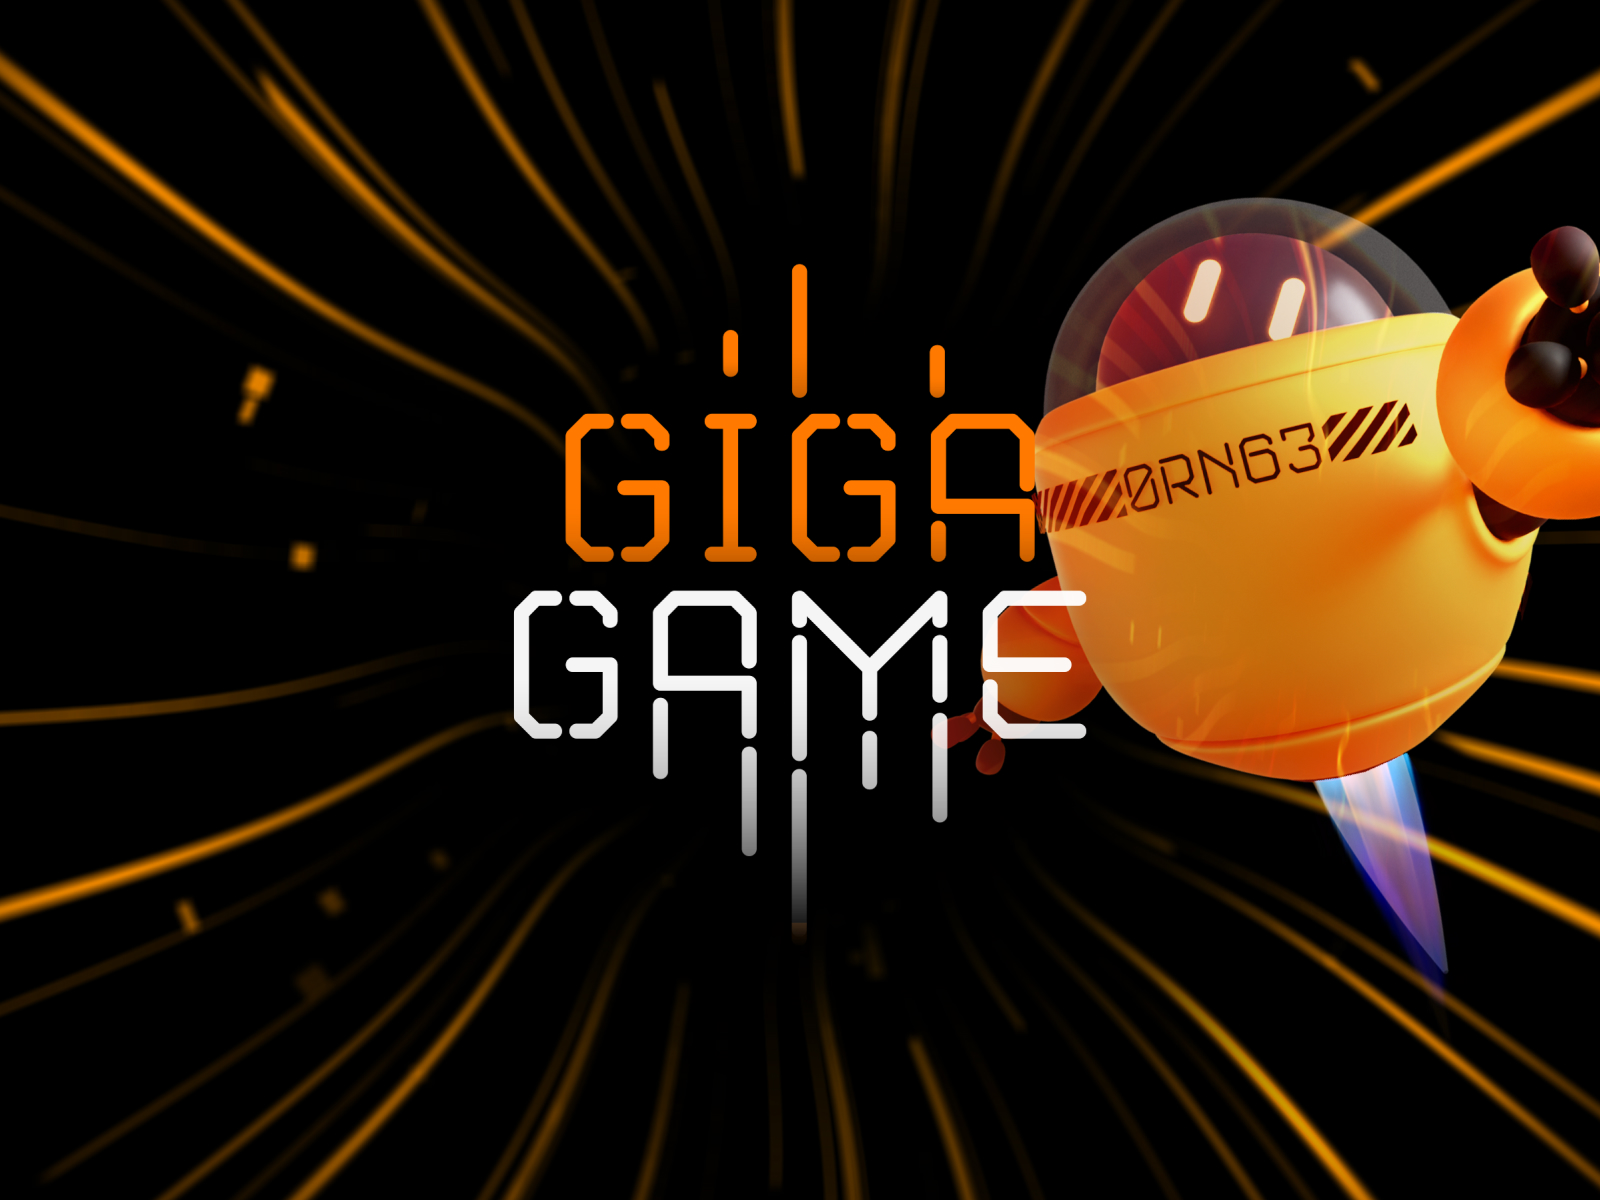 Orange Giga Game